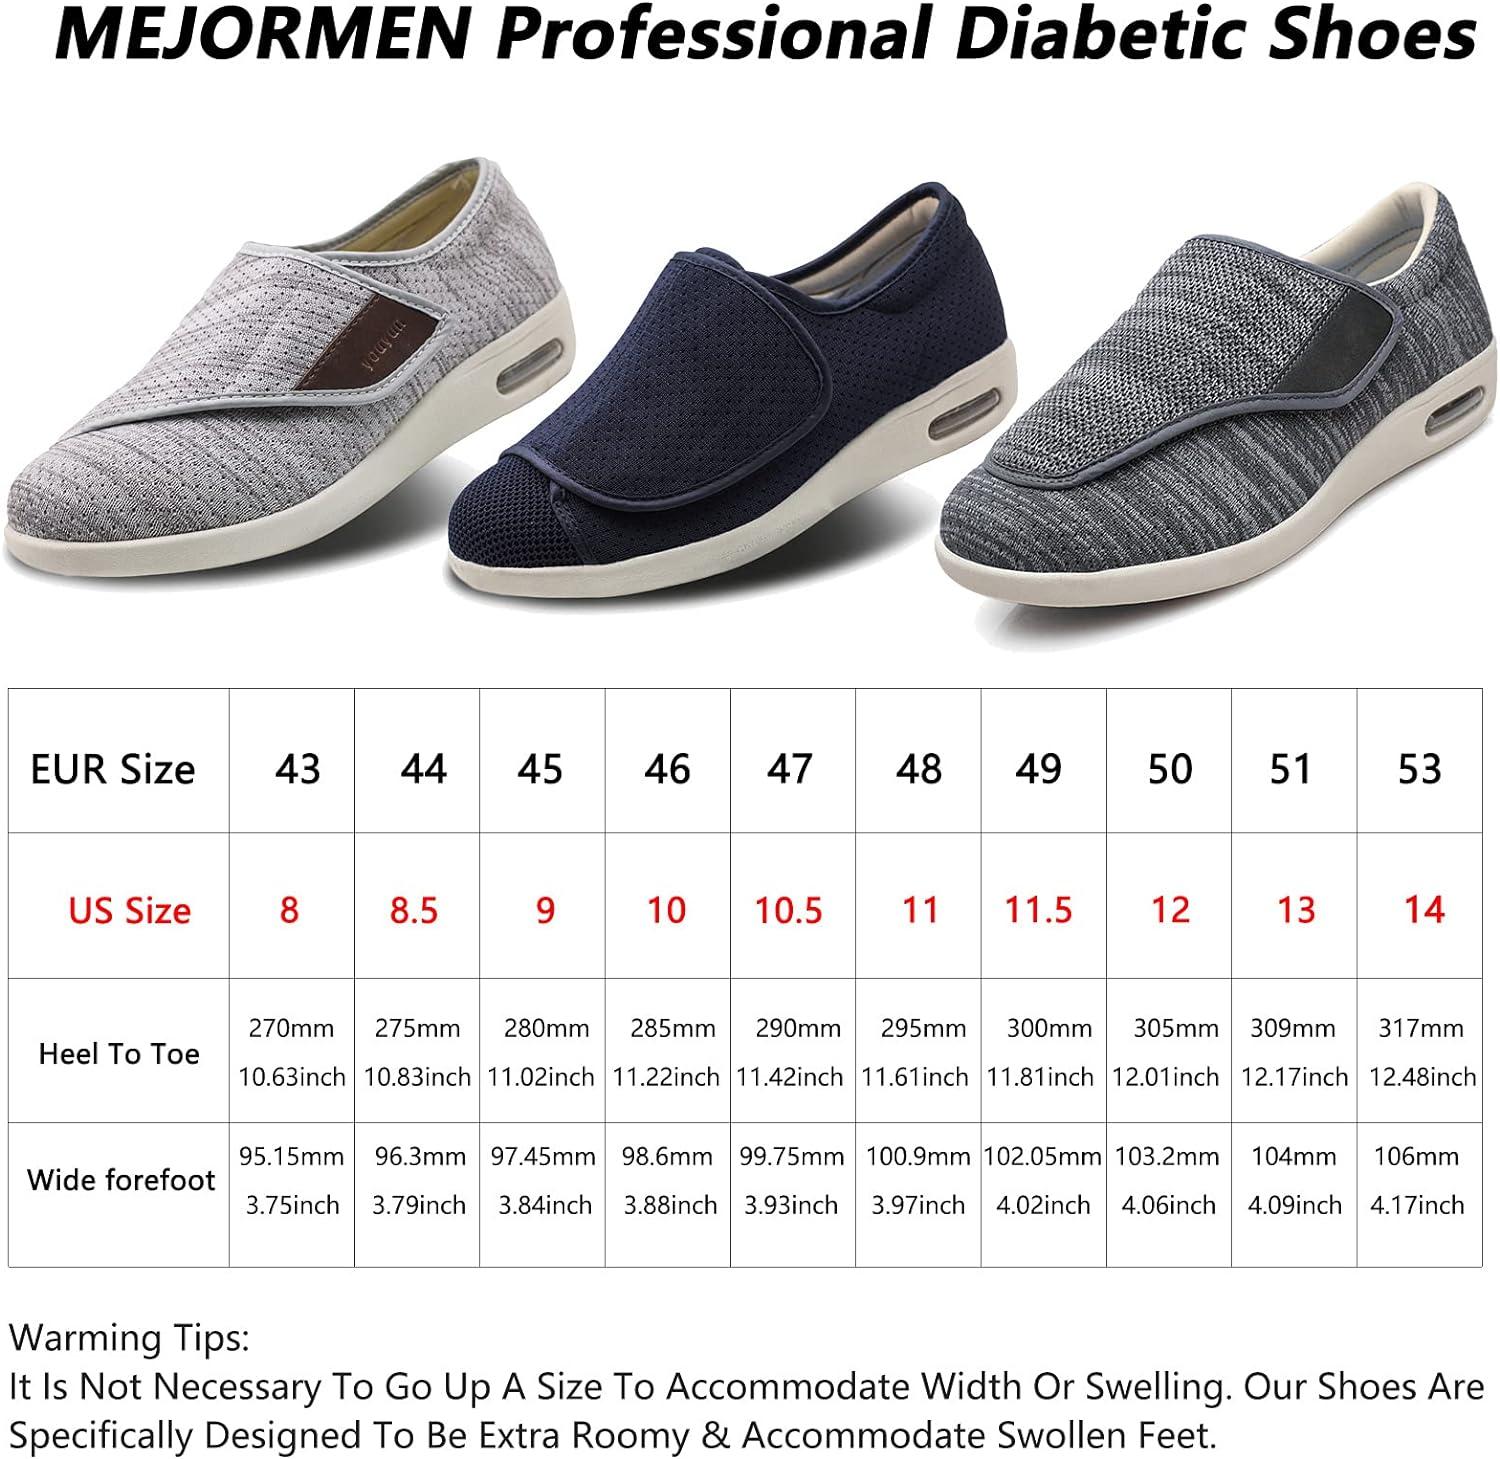 Shop Flexible, Cushioned Shoes for Diabetics